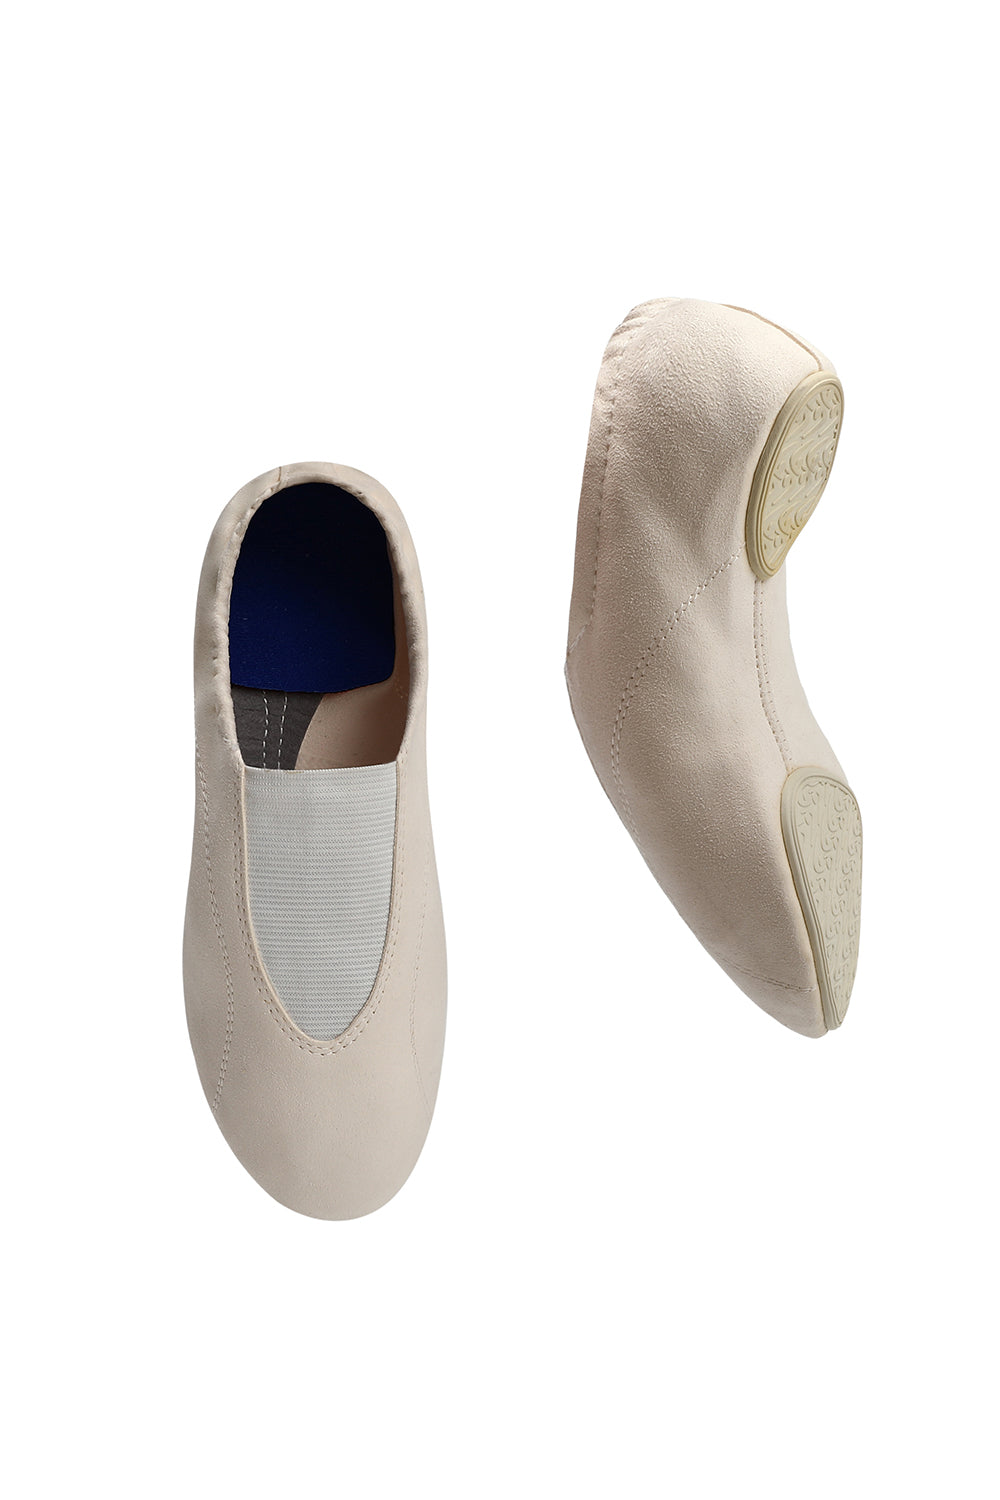 Swiga New Dance Shoes PA7A1523